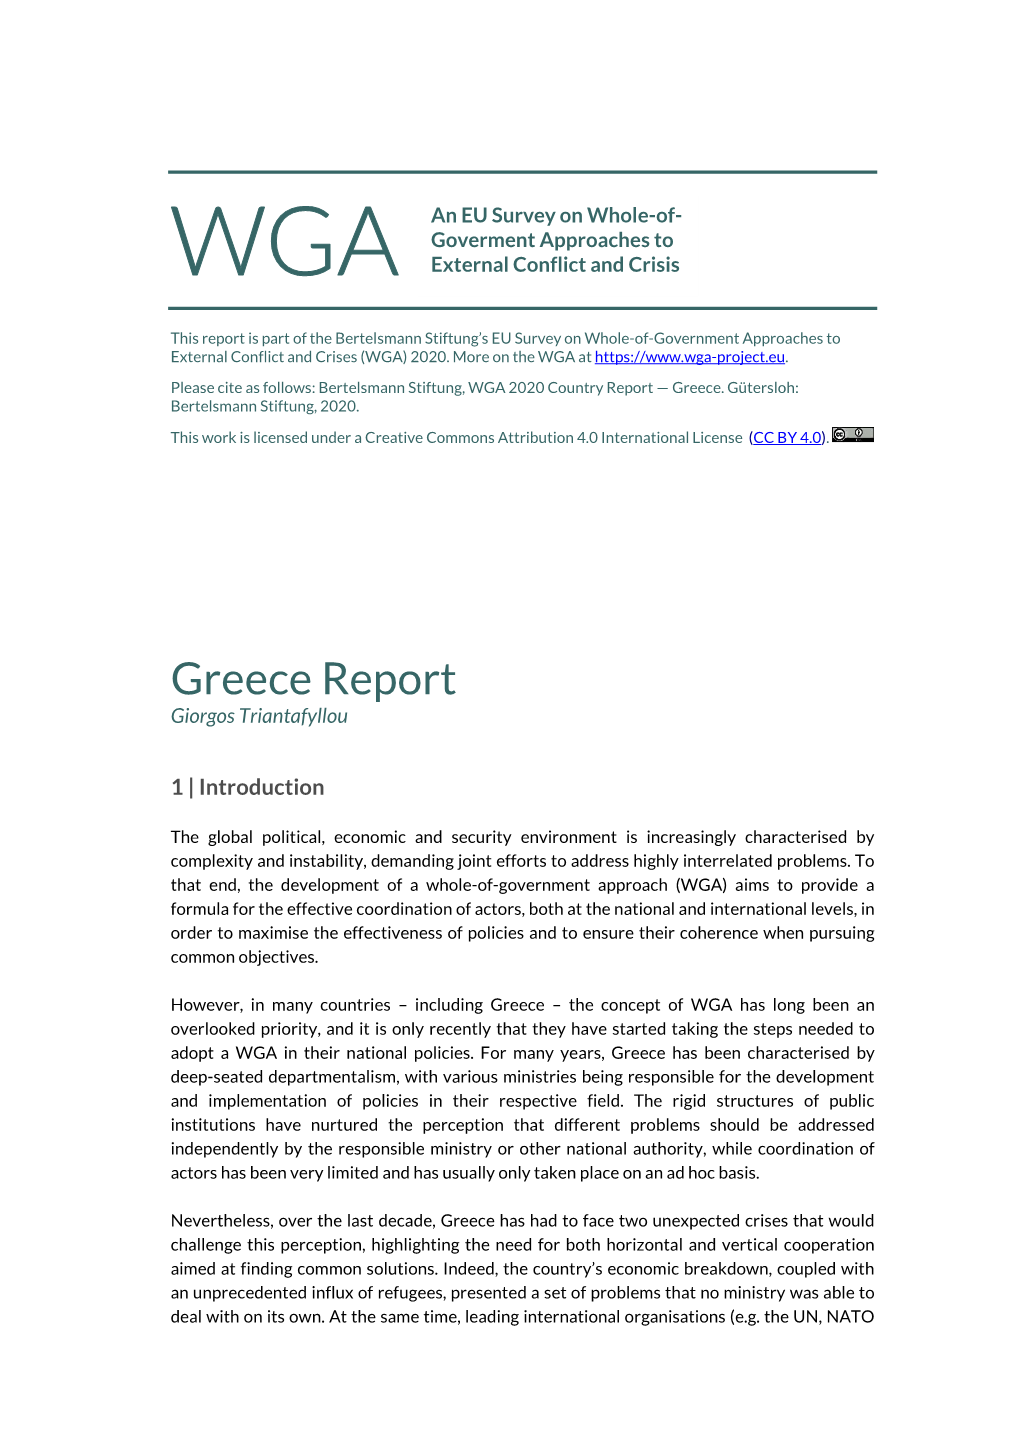 WGA2020 Greece Report